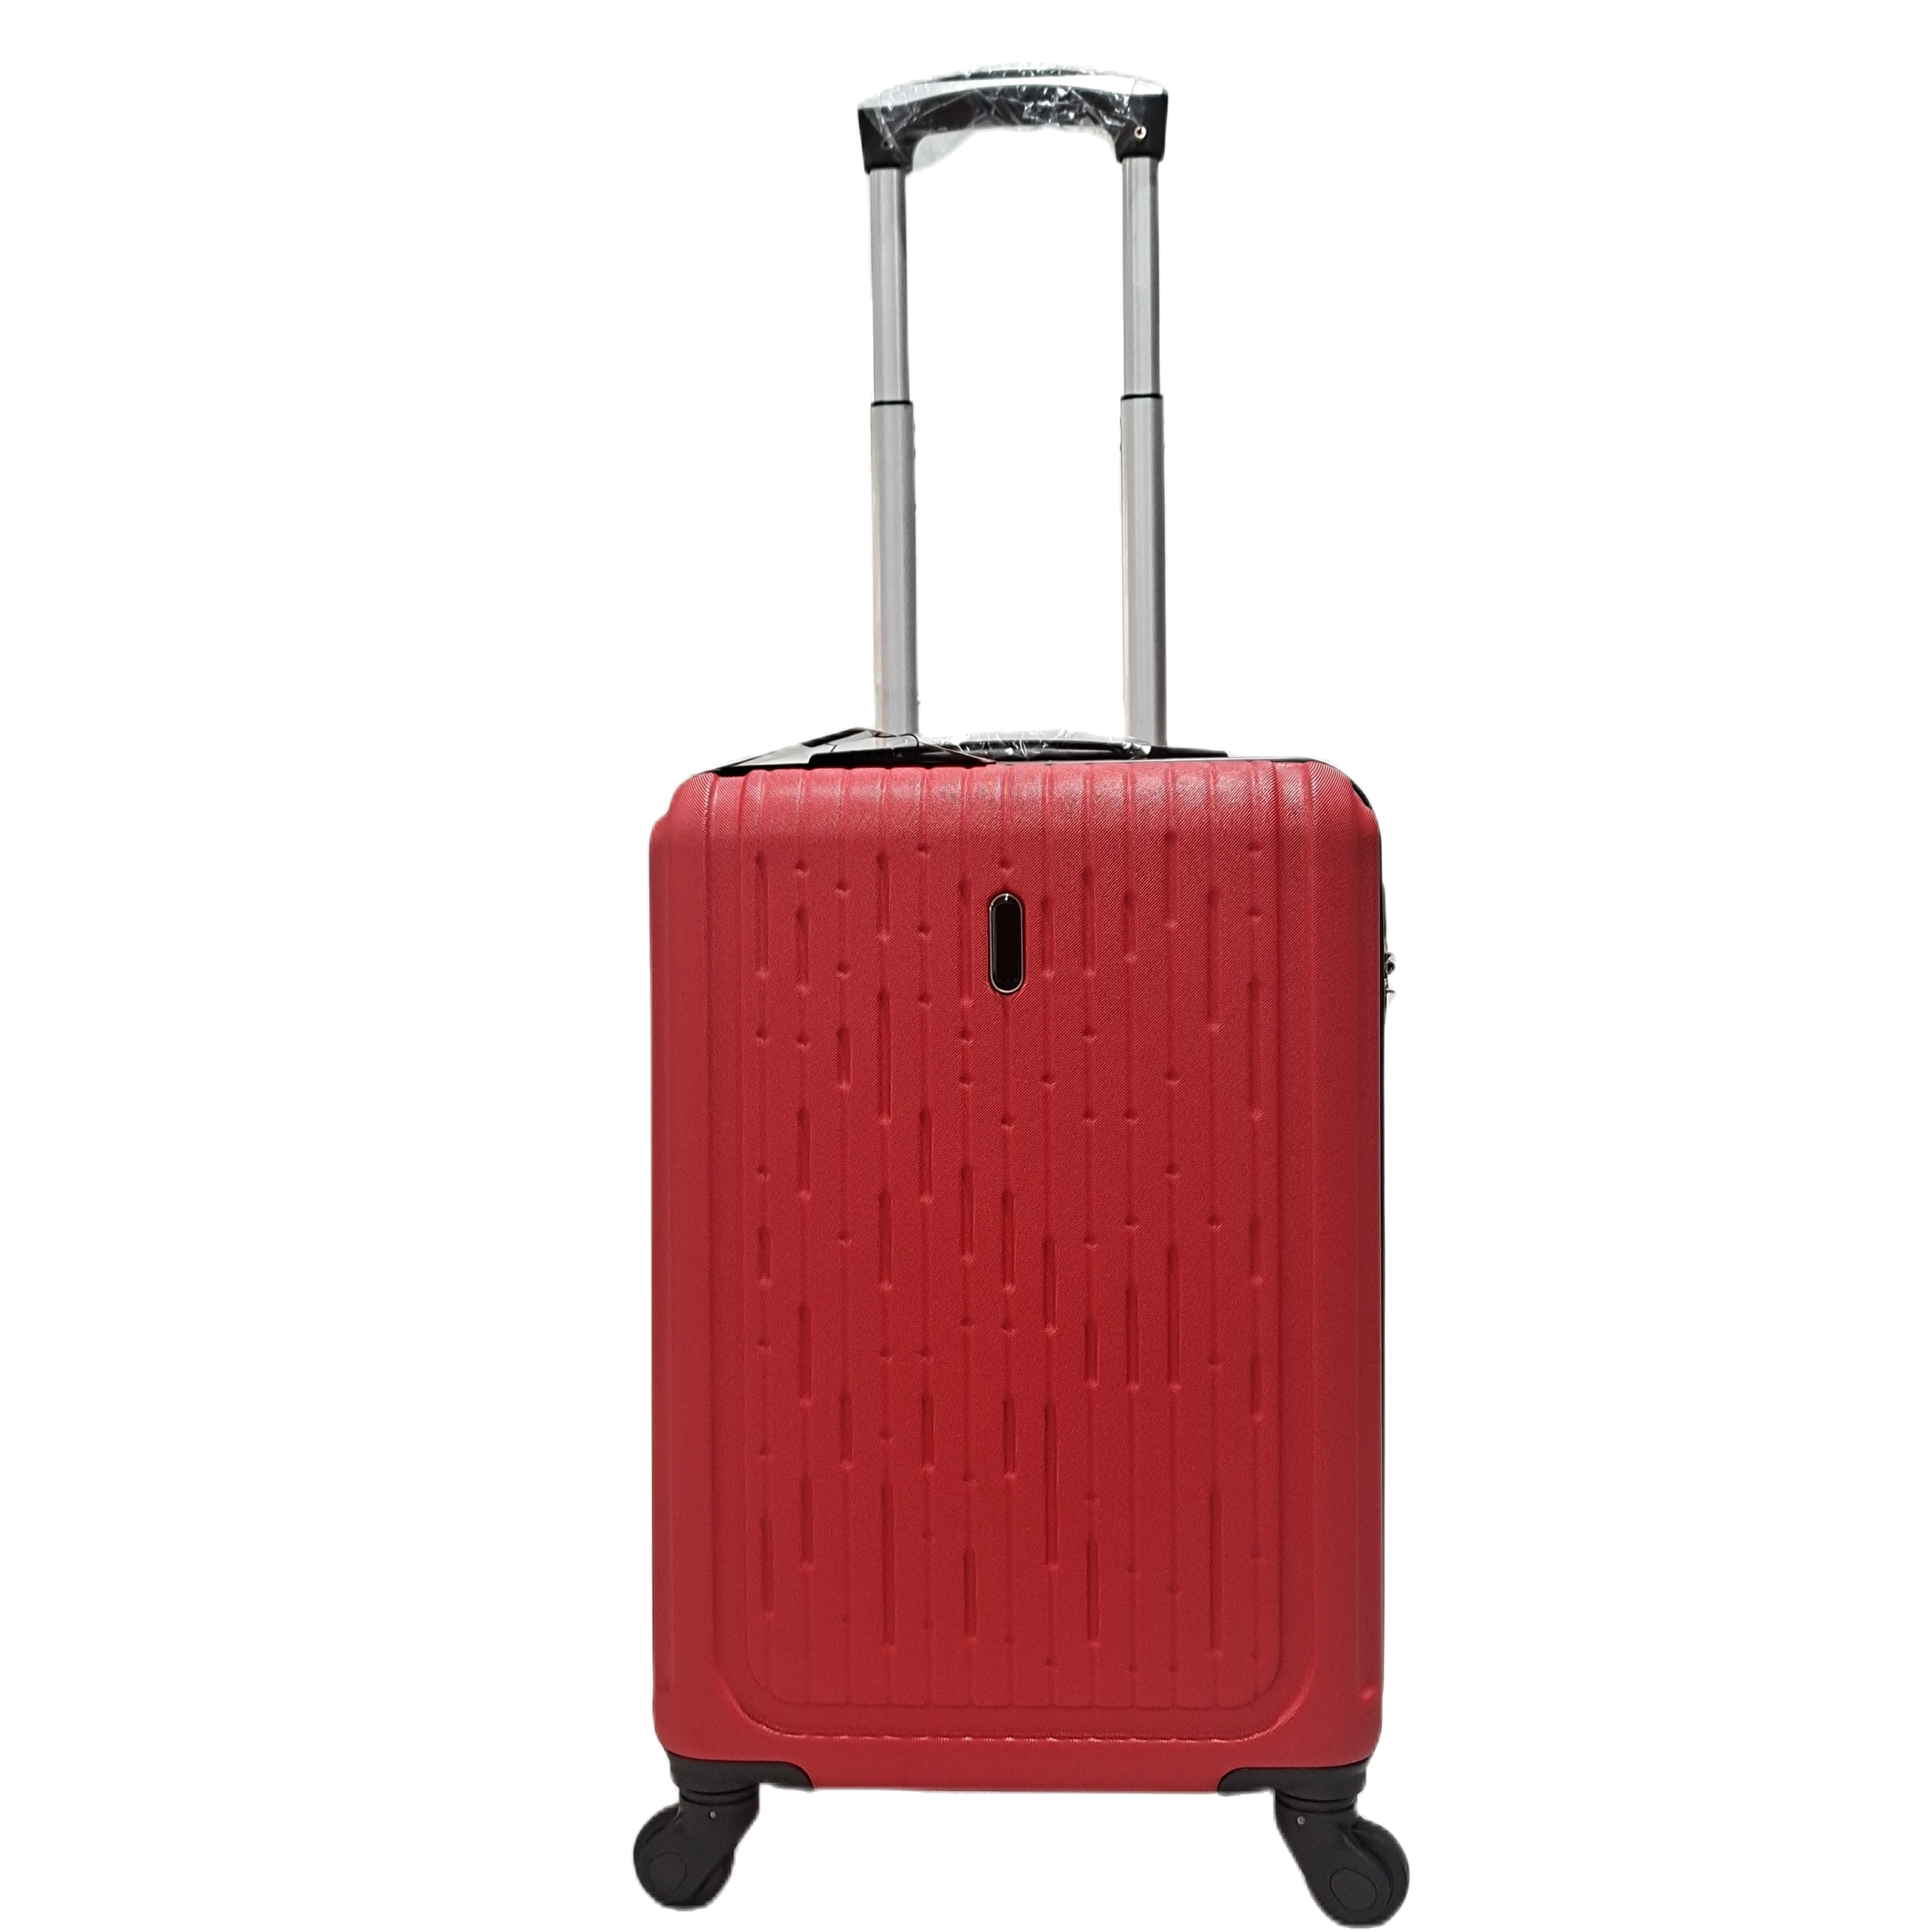  چمدان مسافرتی ABS 360 درجه چمدان چرخدار چمدان مسافرتی